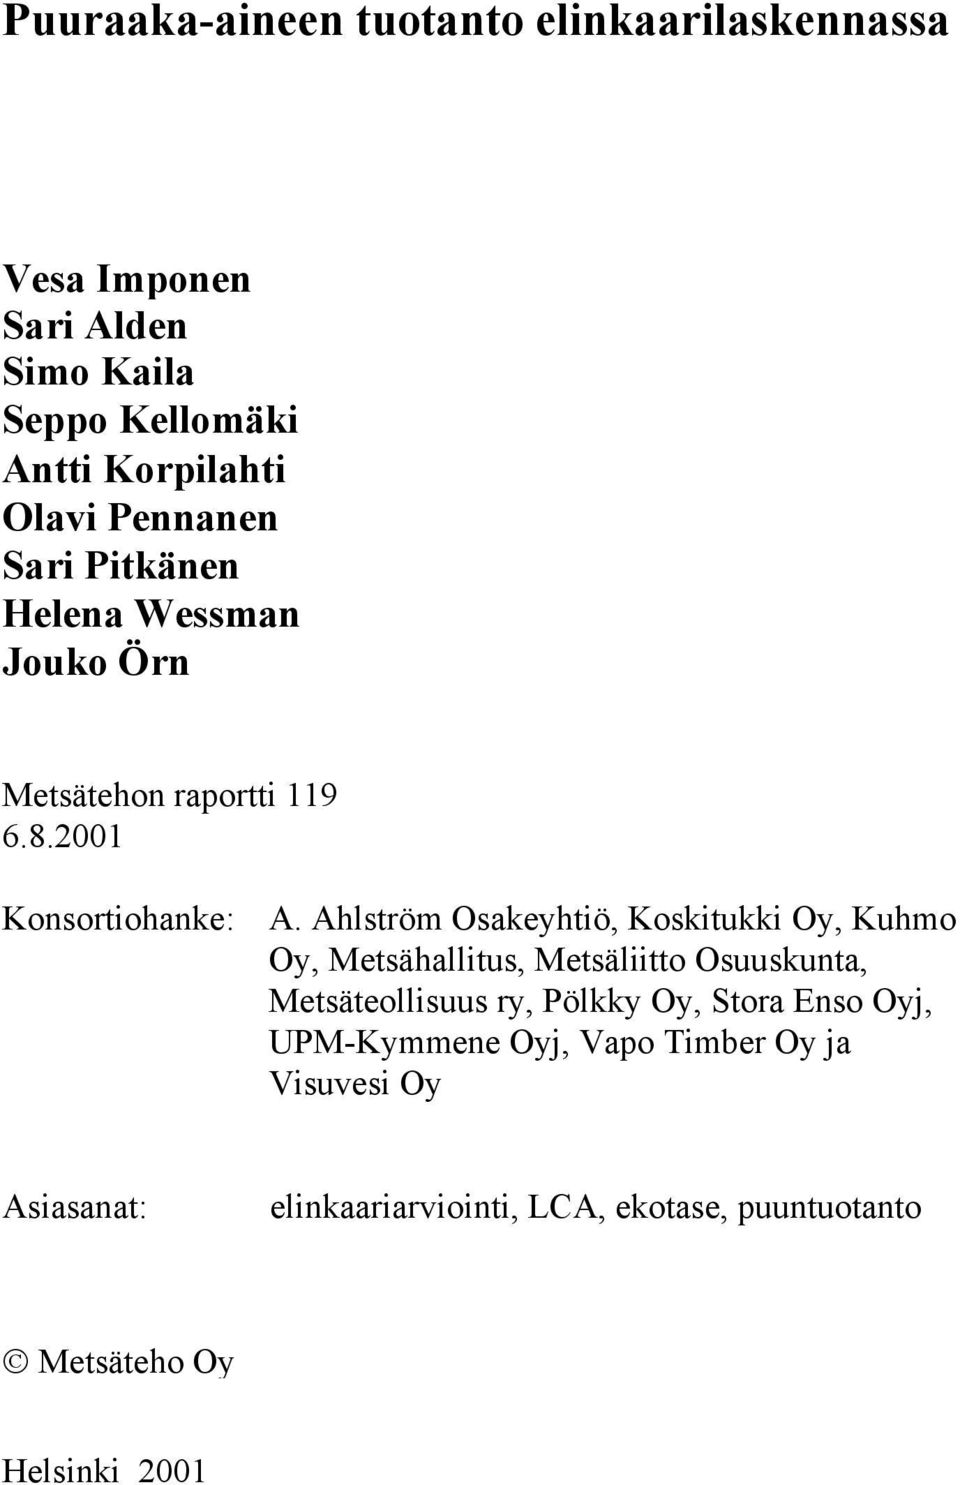 Ahlström Osakeyhtiö, Koskitukki Oy, Kuhmo Oy, Metsähallitus, Metsäliitto Osuuskunta, Metsäteollisuus ry, Pölkky Oy,